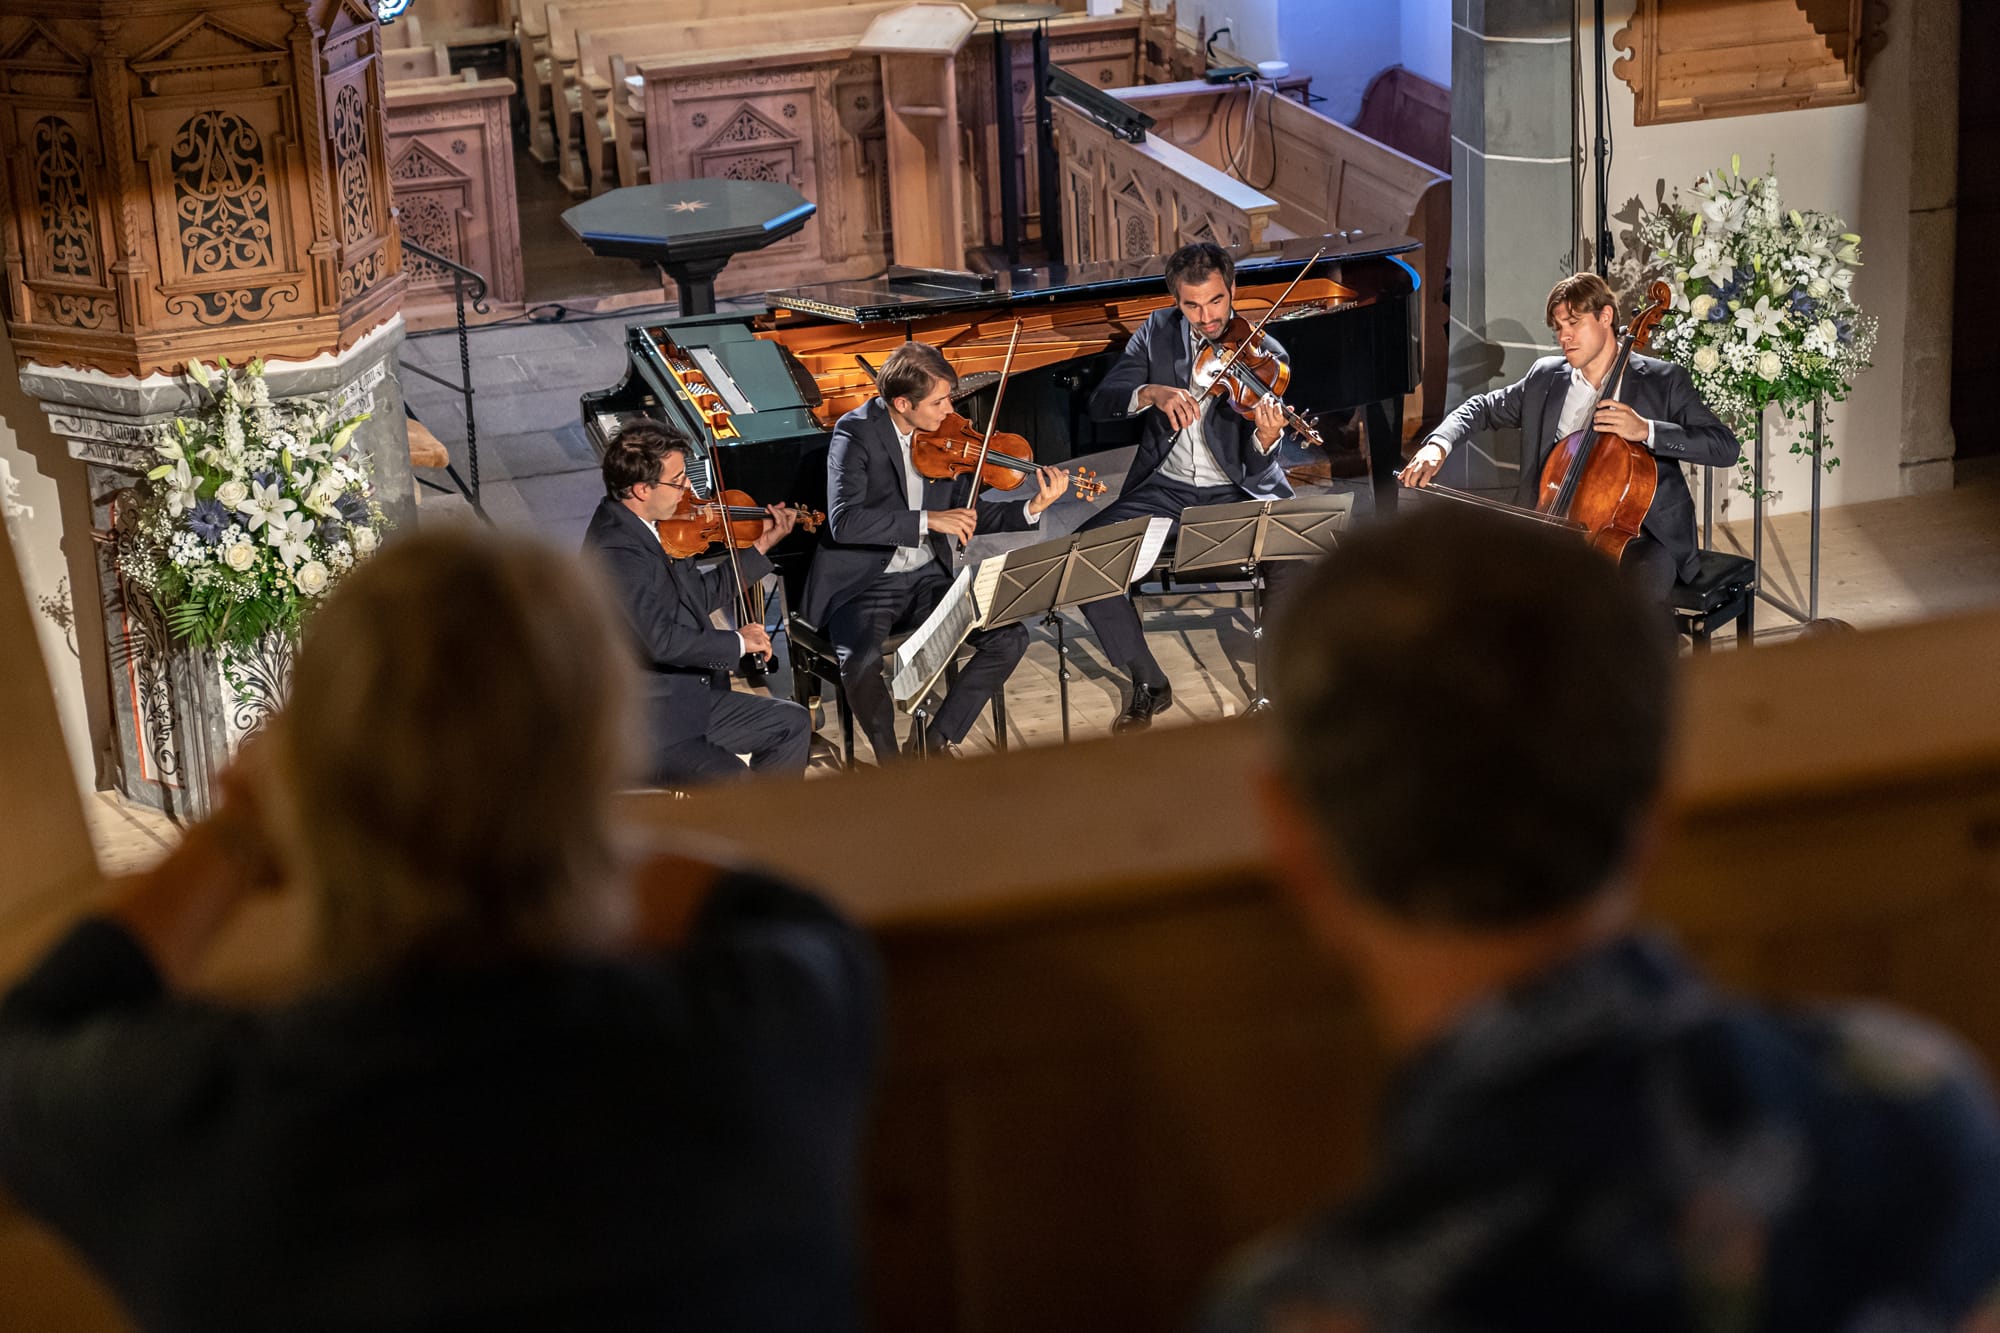 Eine Gruppe von Menschen beobachtet eine Gruppe von Musikern in einer Kirche.